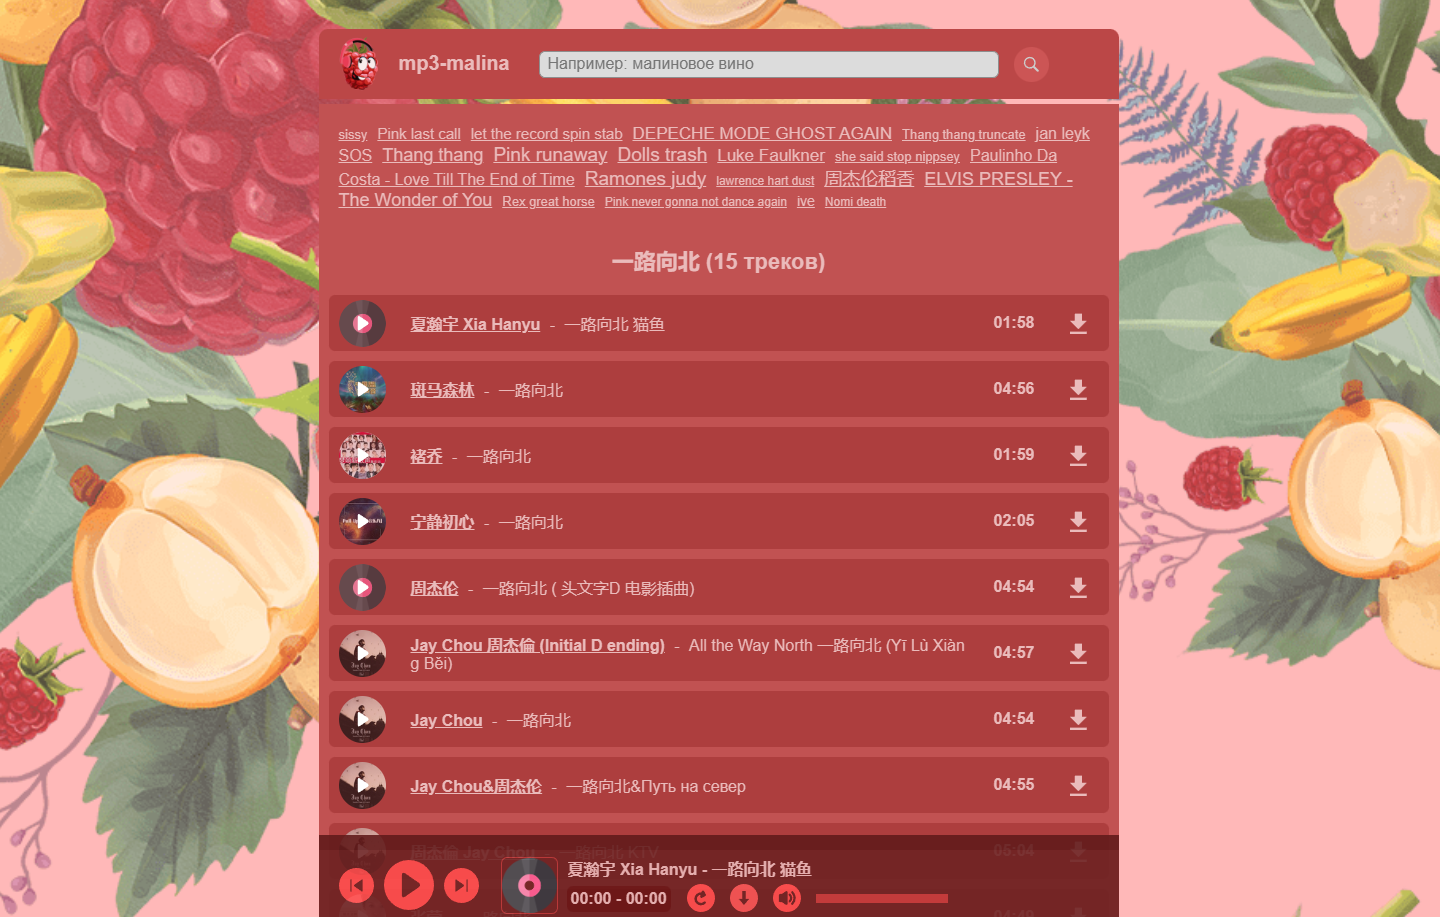 俄罗斯 mp3-malina 音乐下载网站，支持中文歌曲 第2张插图